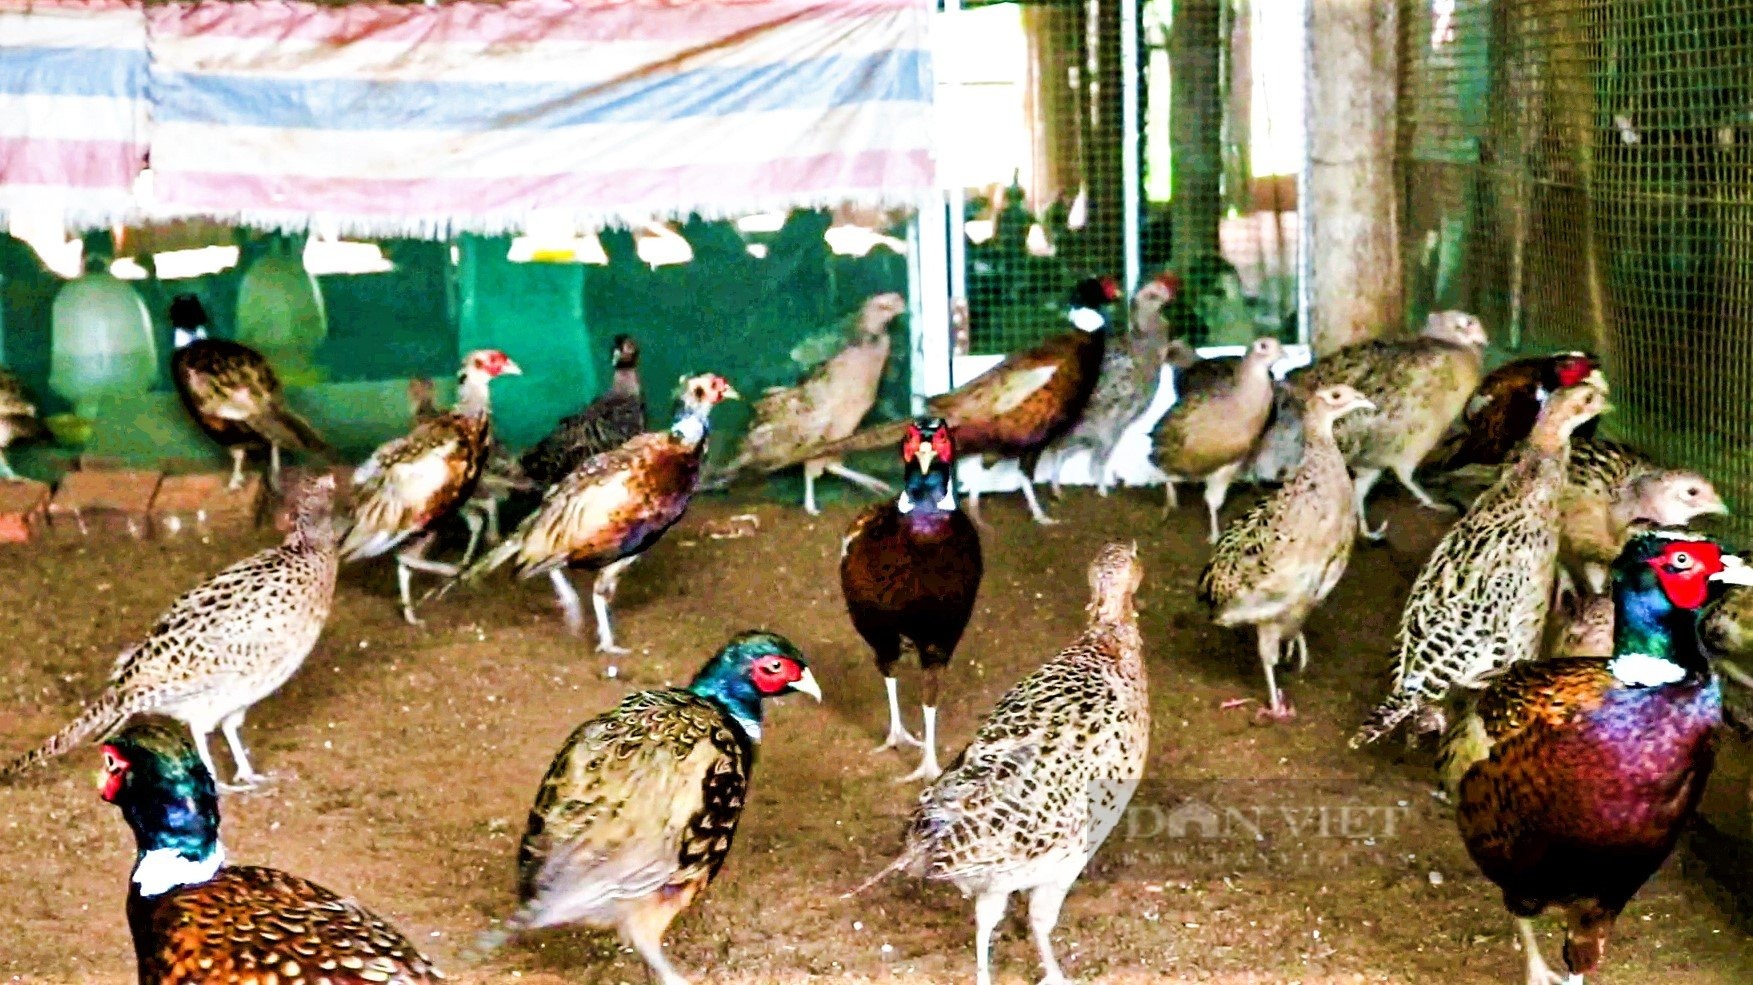 Chim trĩ vàng 7 màu Thái Lan sinh sản - Trang trại Phan Minh Hồng